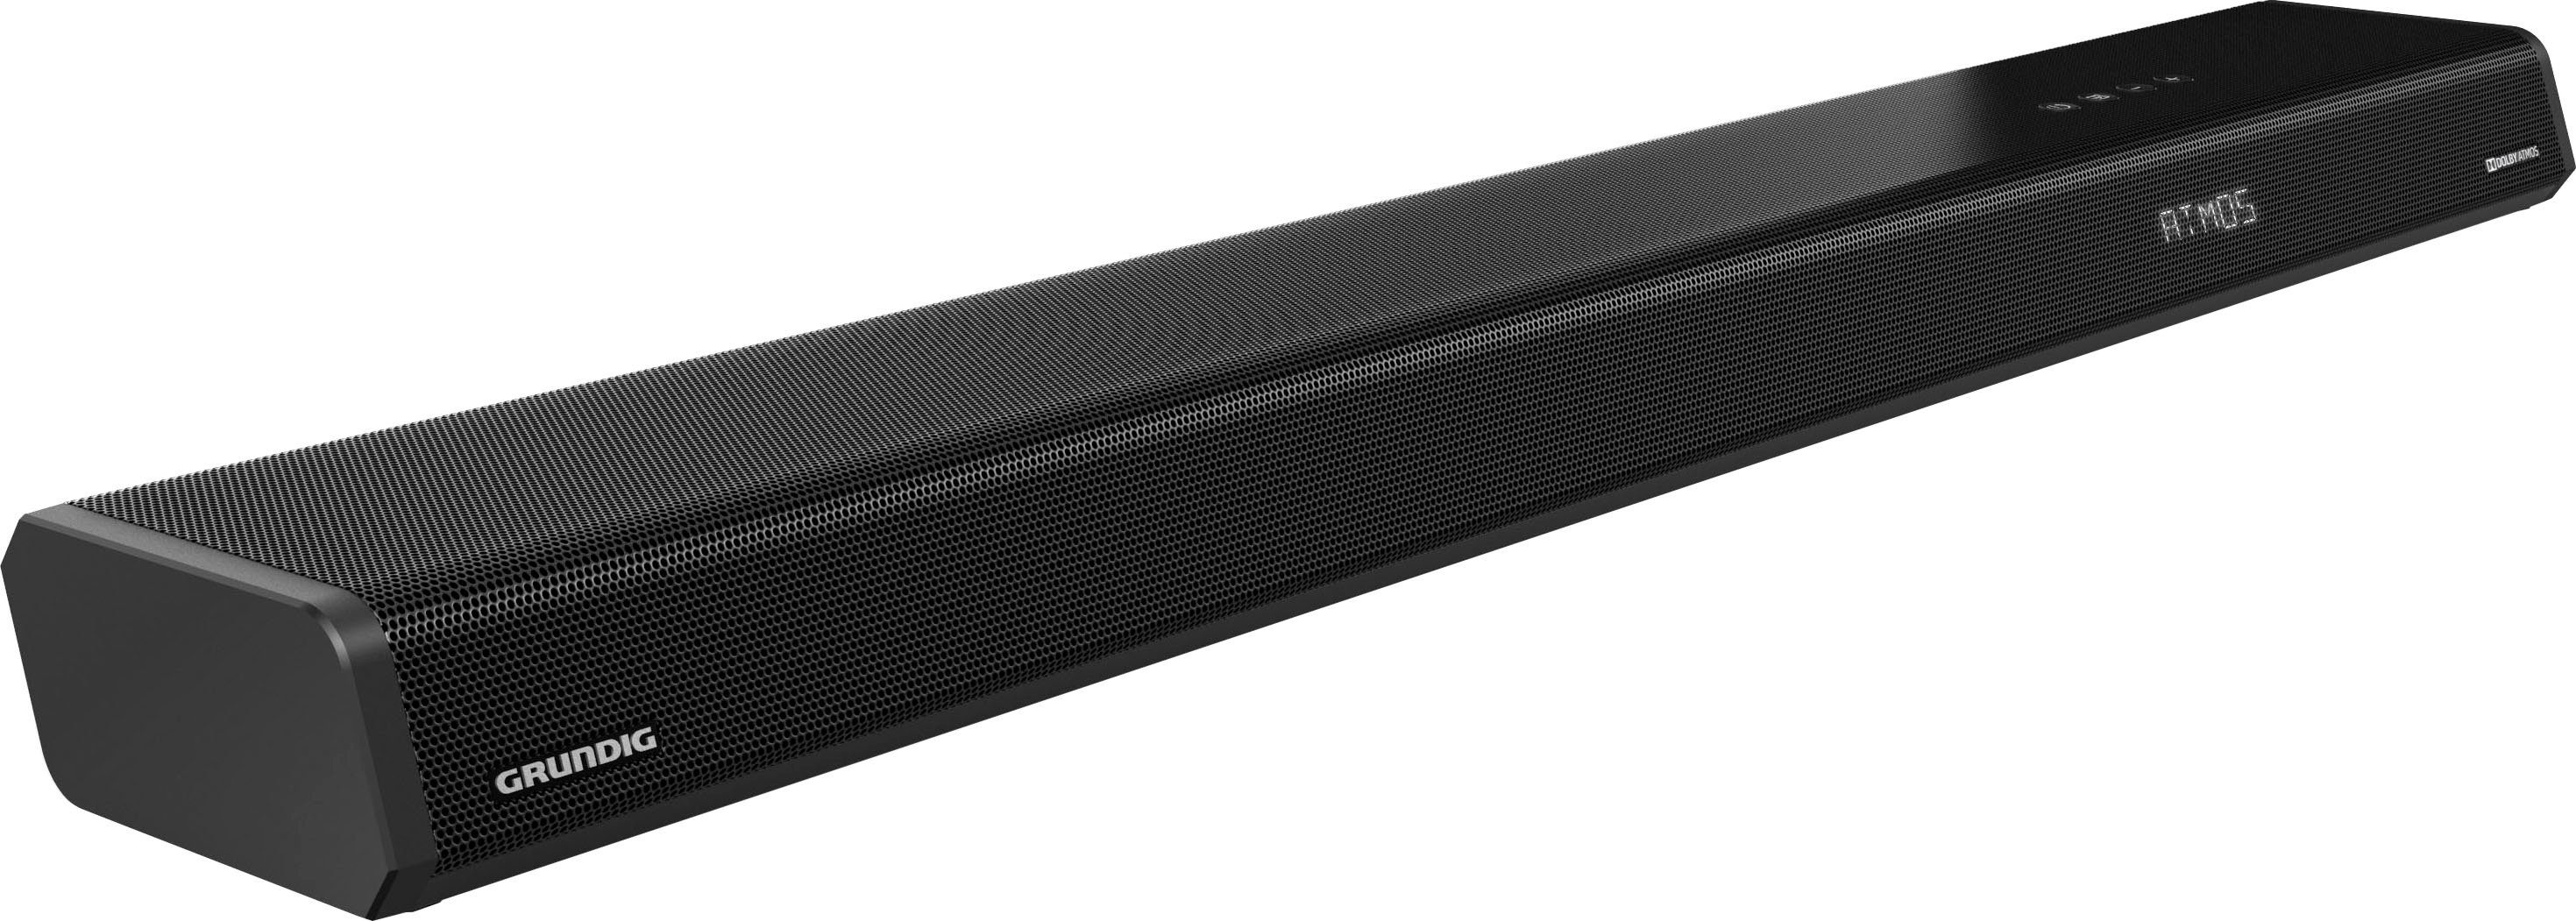 Grundig DSB 1000 All in One Dolby Atmos Soundbar (Bluetooth, 120 W) | Soundbars